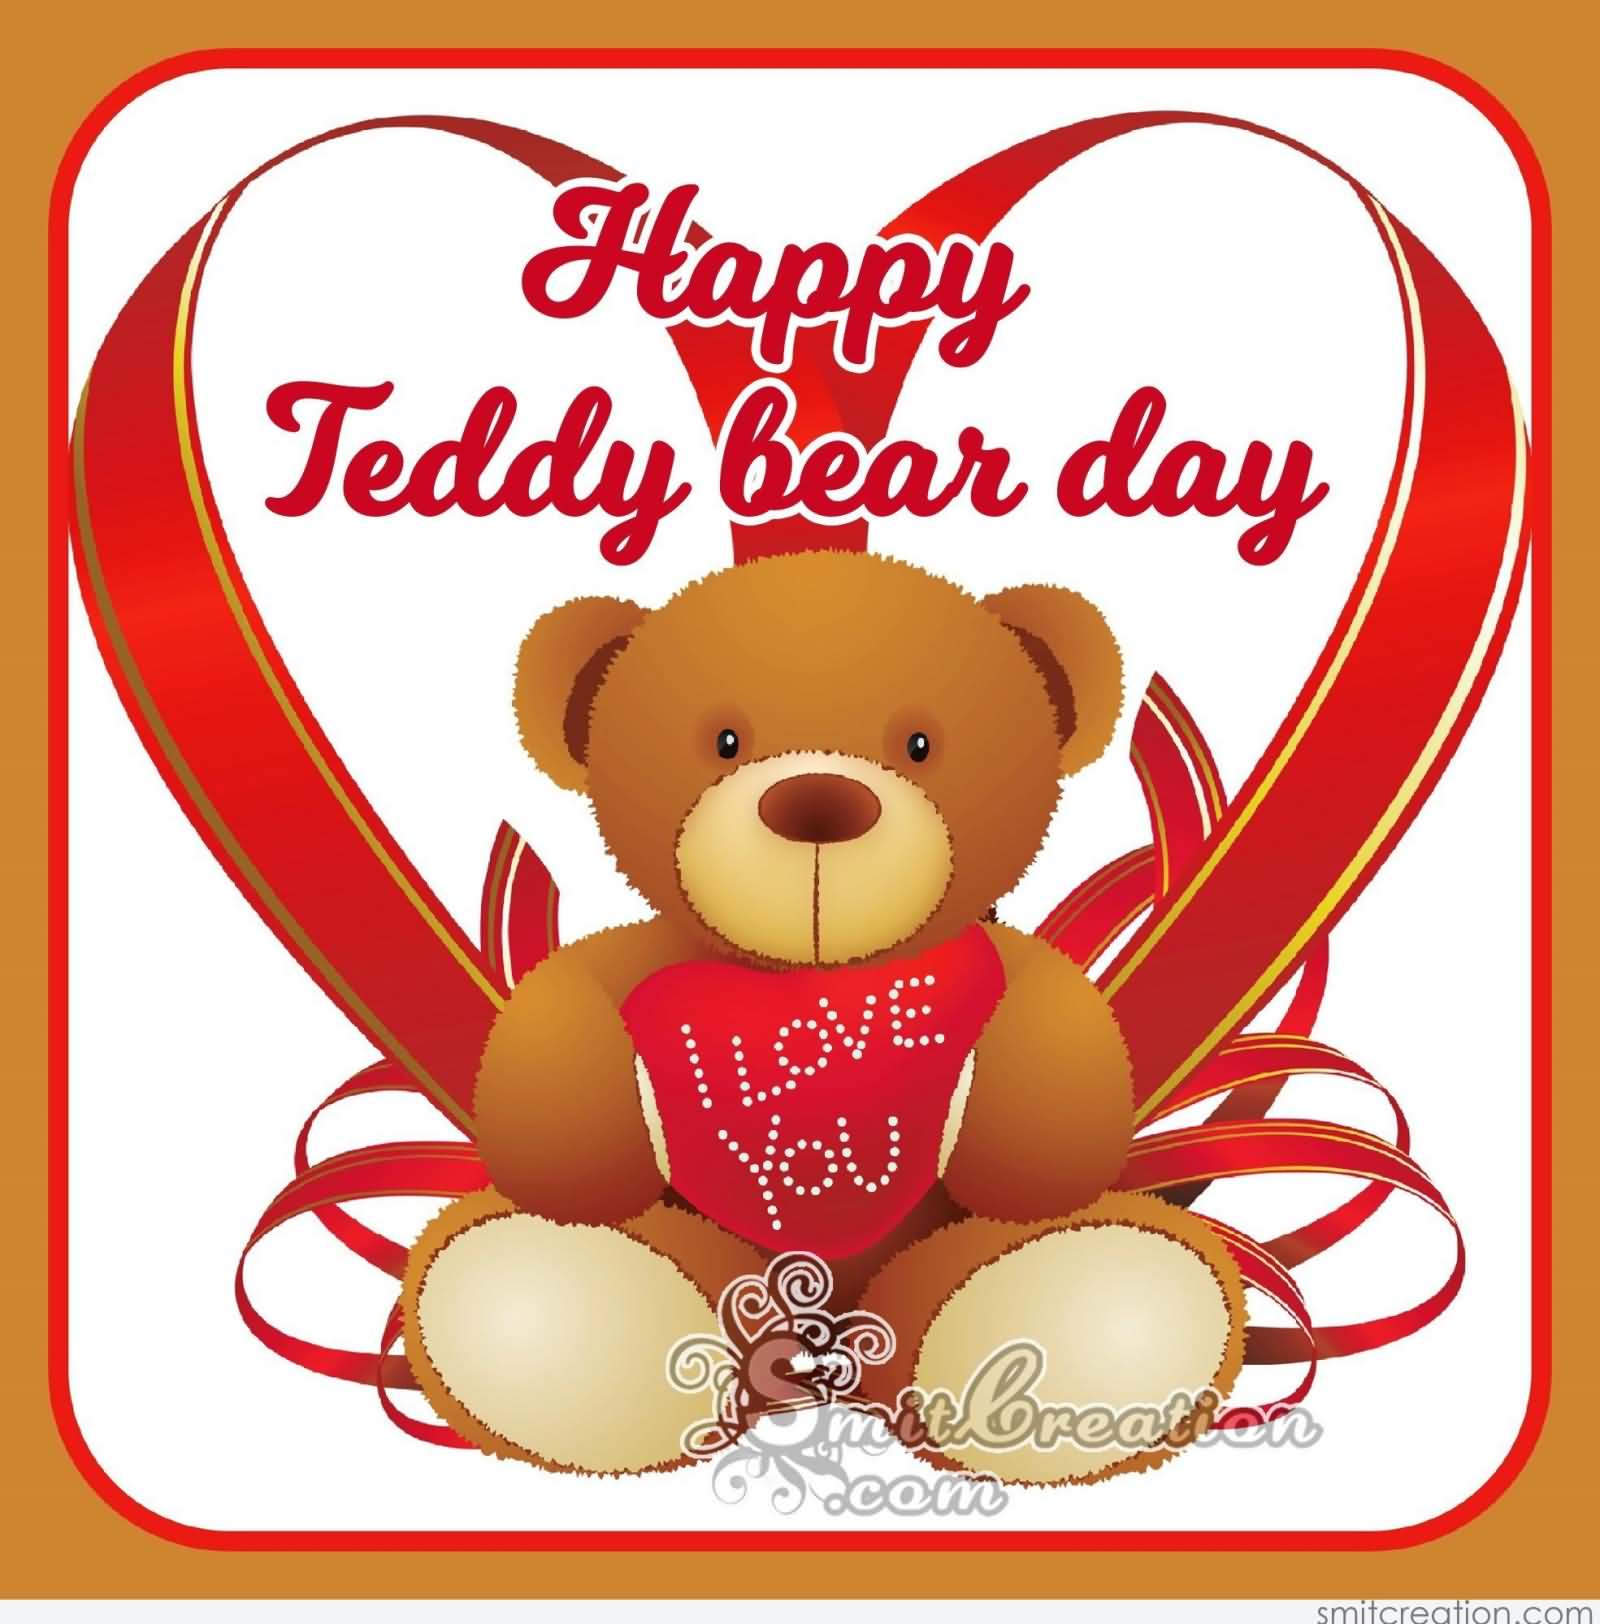 Happy teddy bear day card